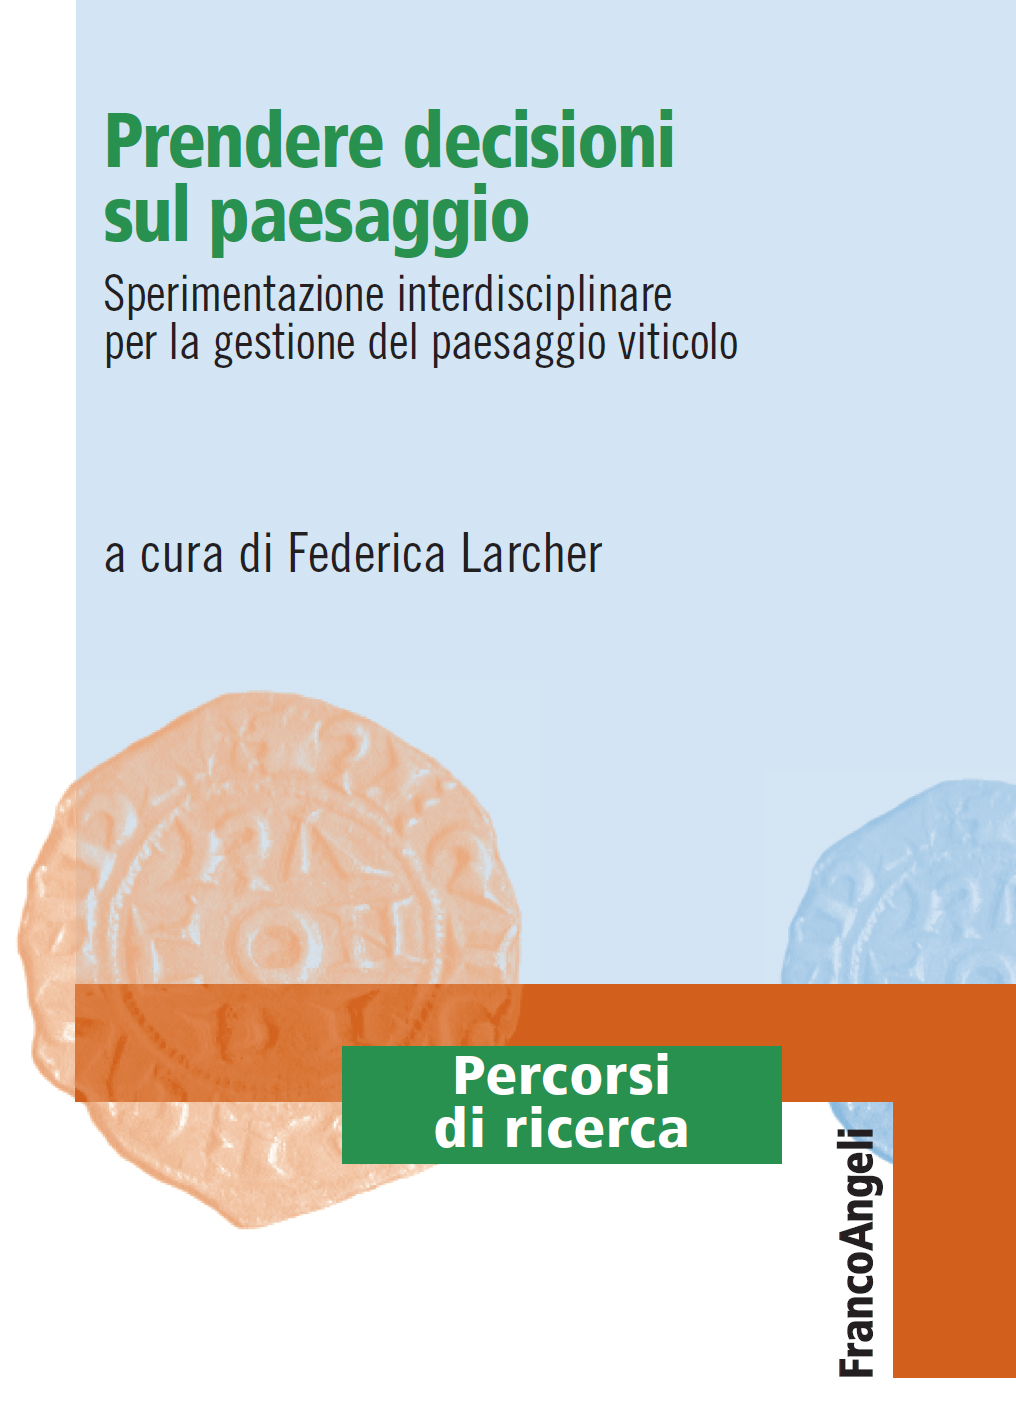 Copertina del Volume Prendere decisioni sul paesaggio. Sperimentazione interdisciplinare per la gestione del paesaggio viticolo, a cura di Federica Larcher (Franco Angeli Editore).